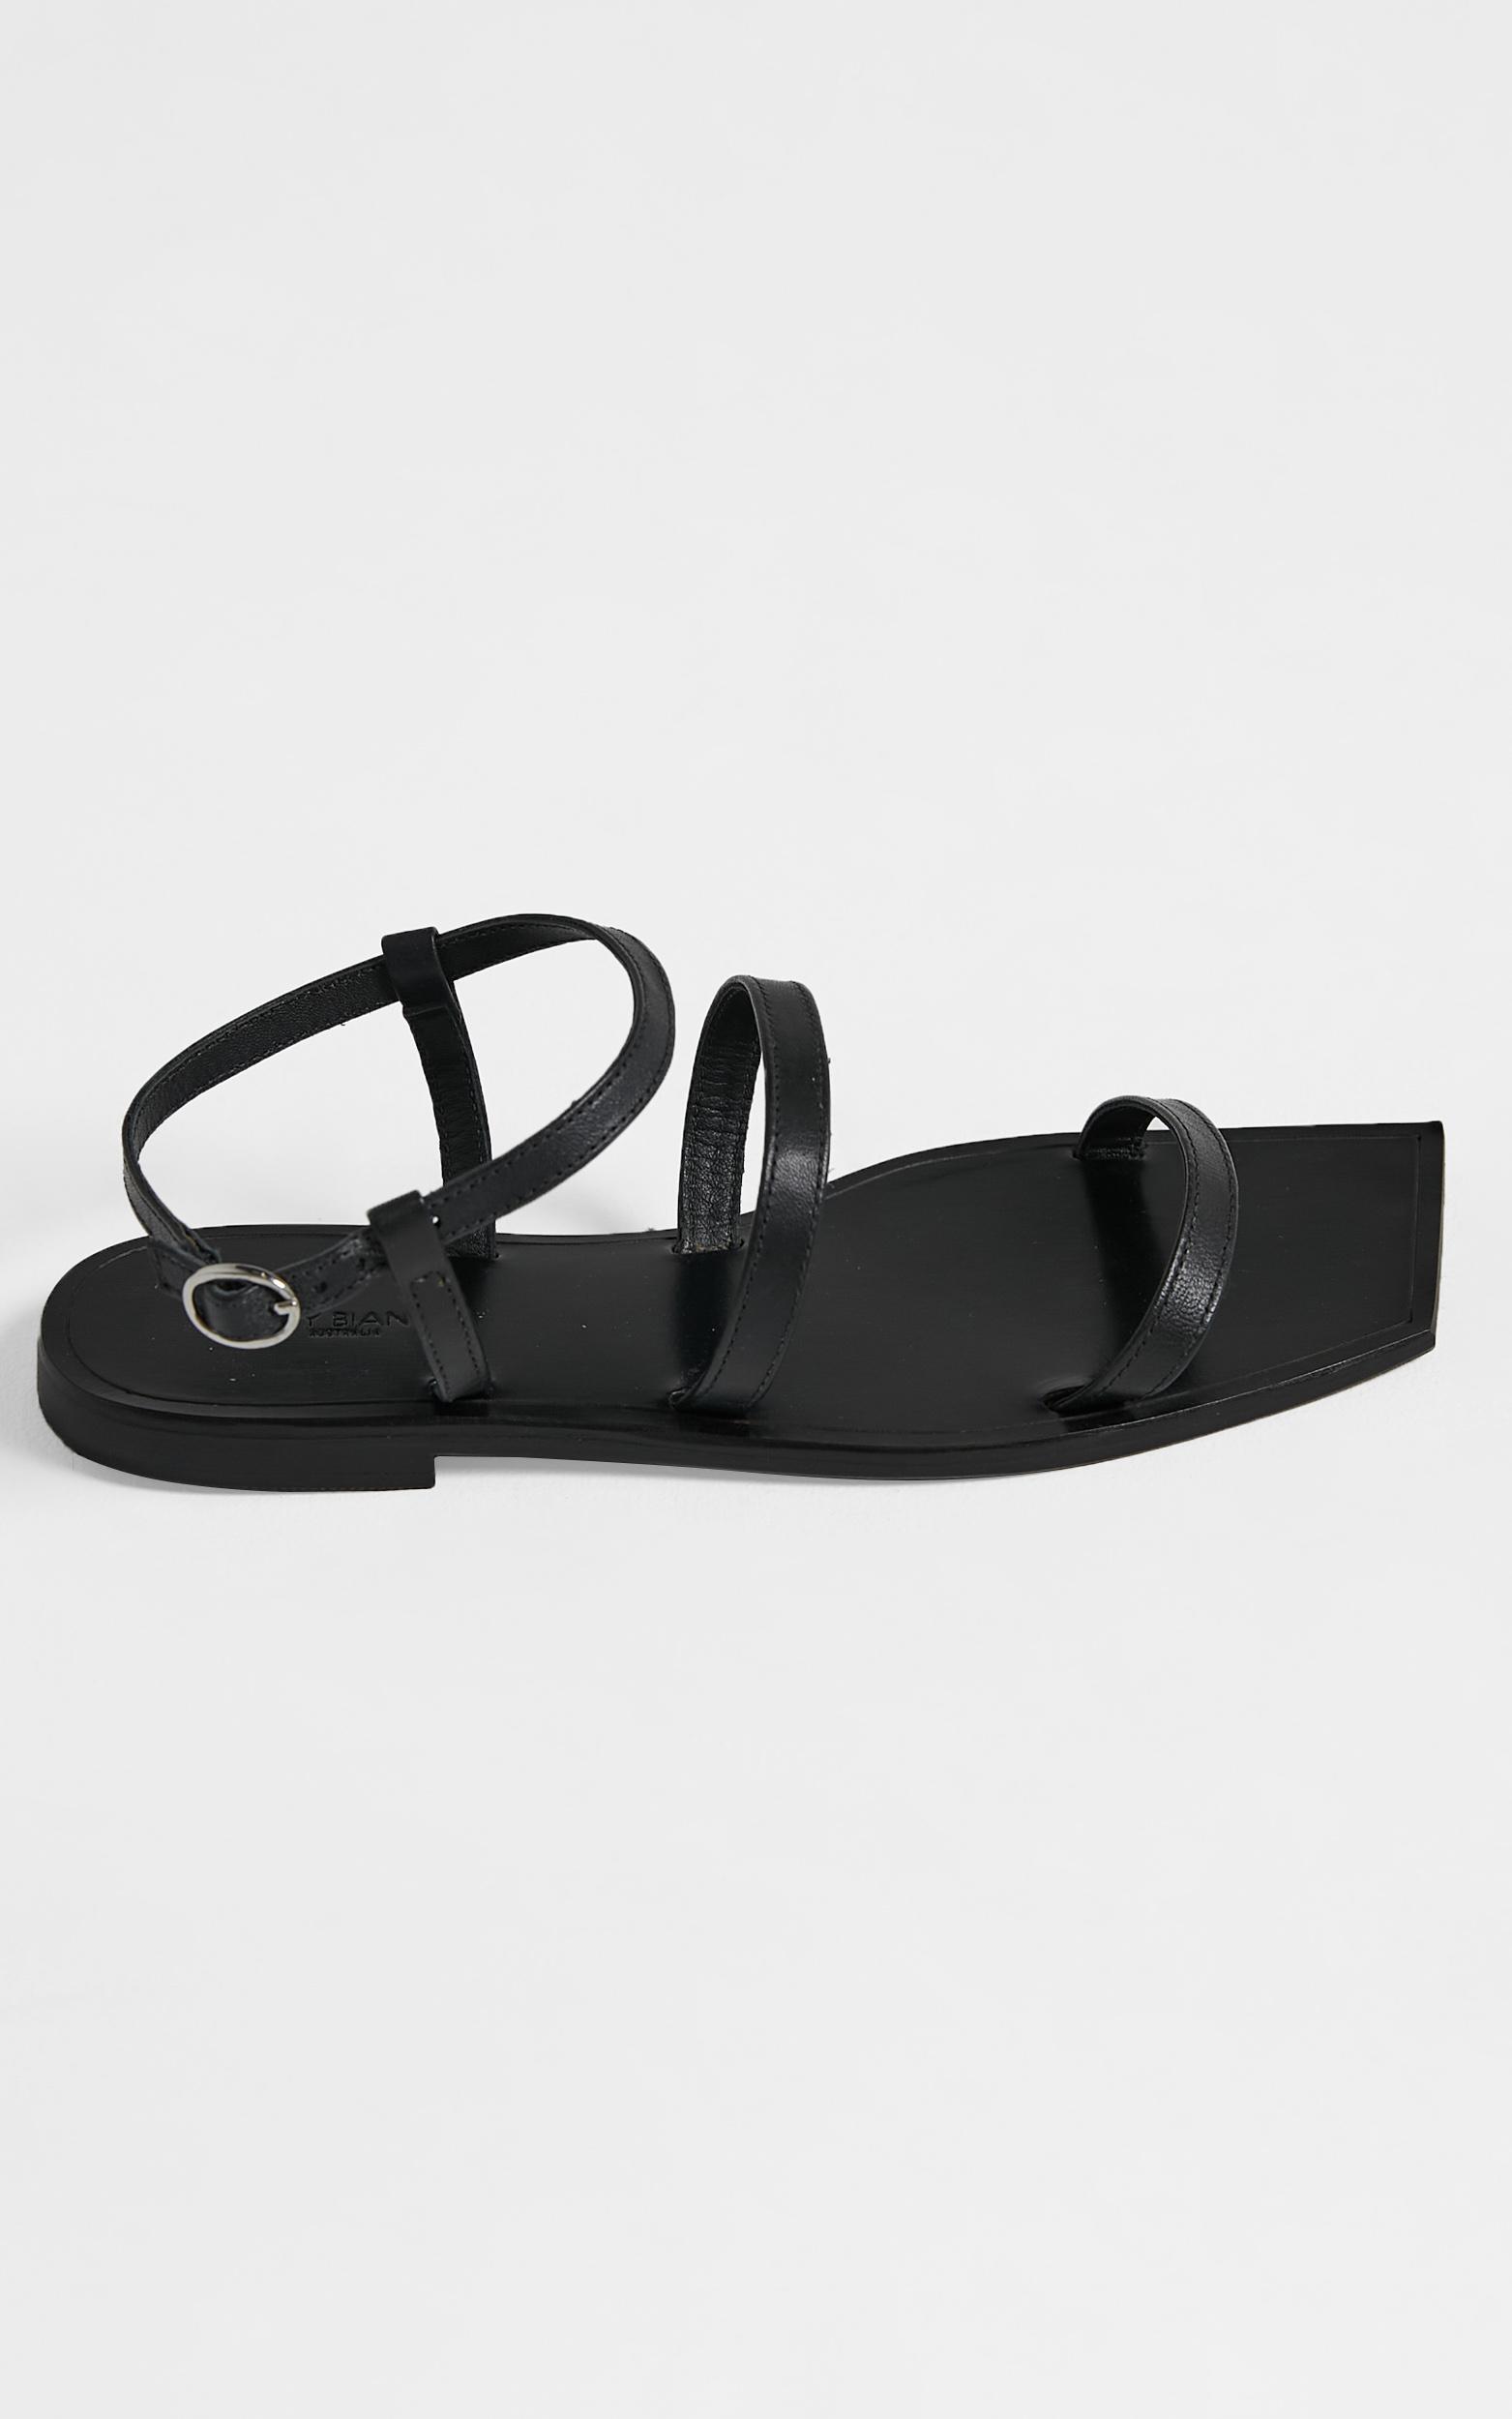 Tony Bianco - Reiki Sandals in Black - 5, Black, hi-res image number null